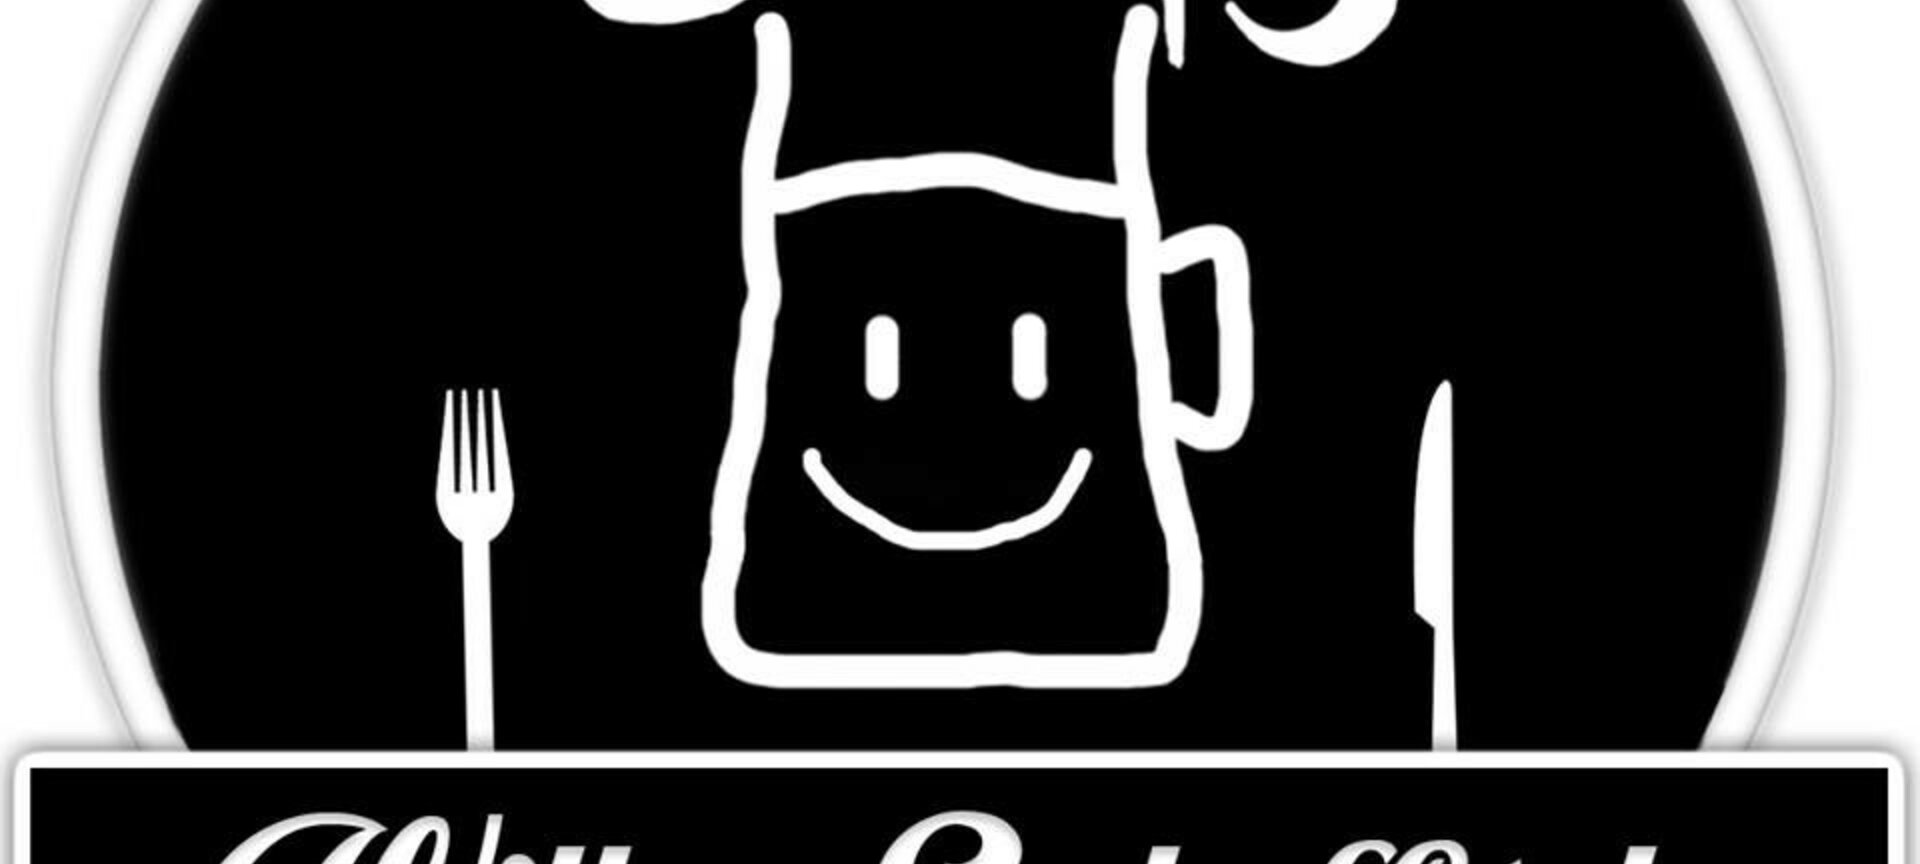 Willers Eetkaffee - ons logo